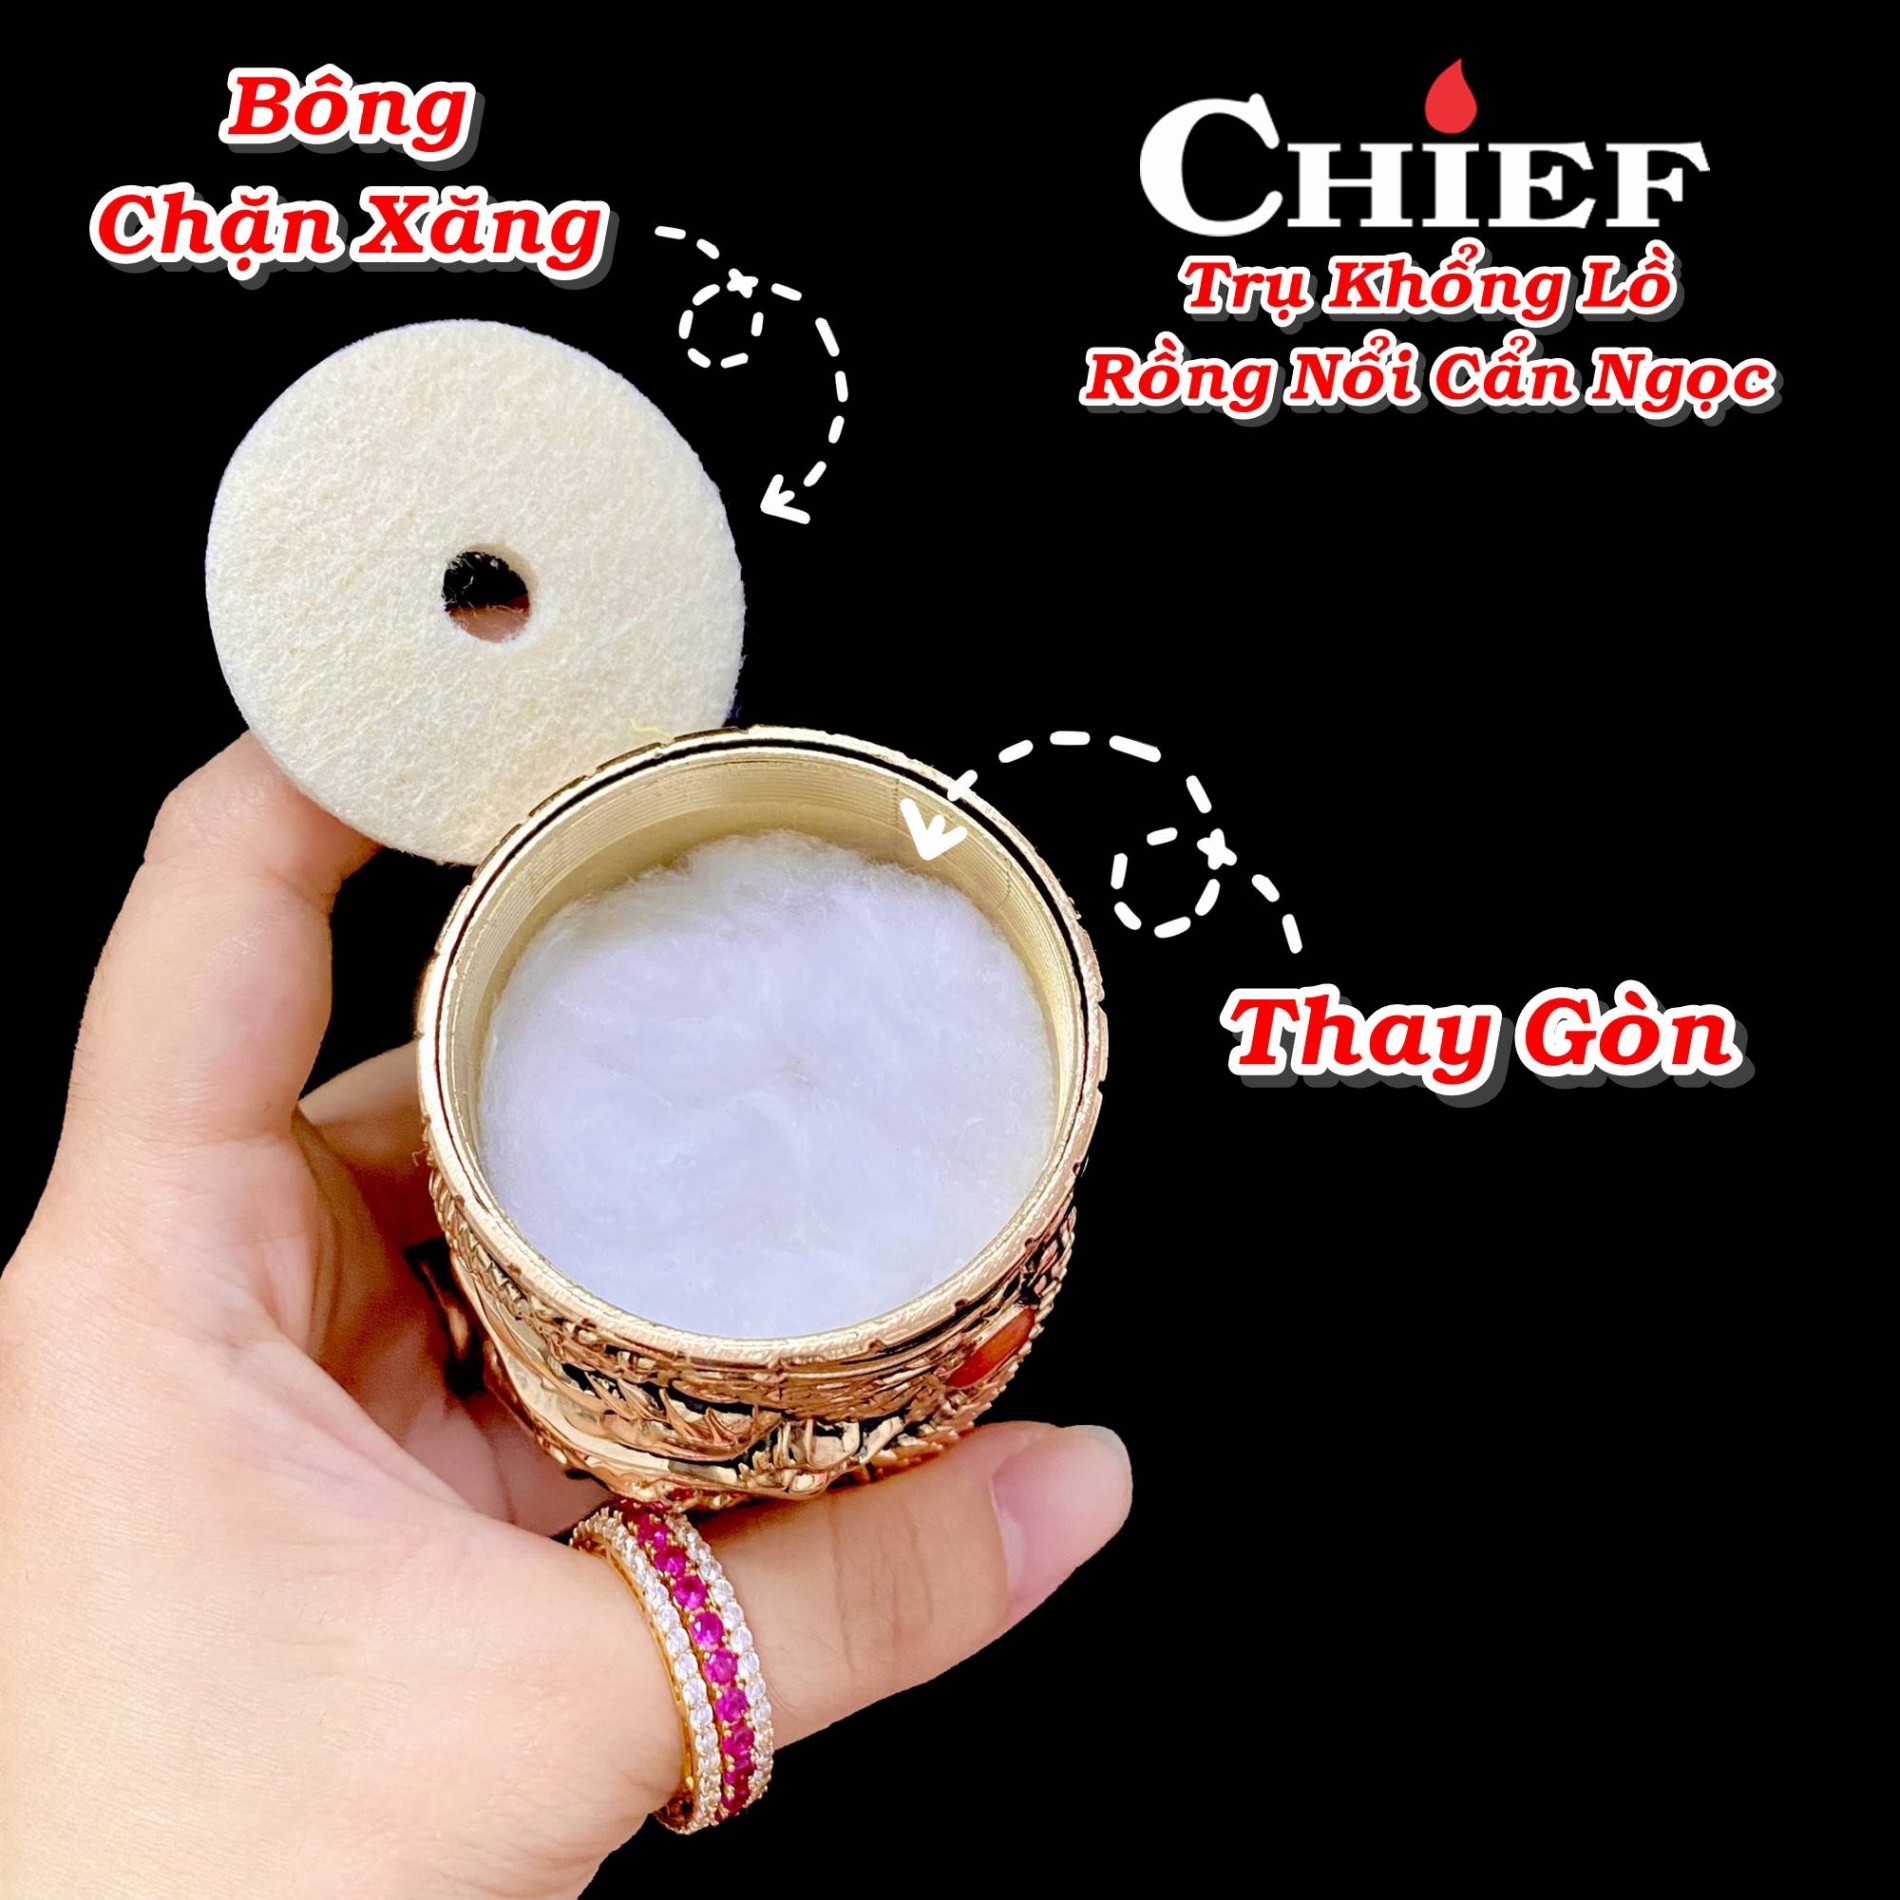 chief_tru_khong_lo_rong_noi_can_ngoc_cf206_6